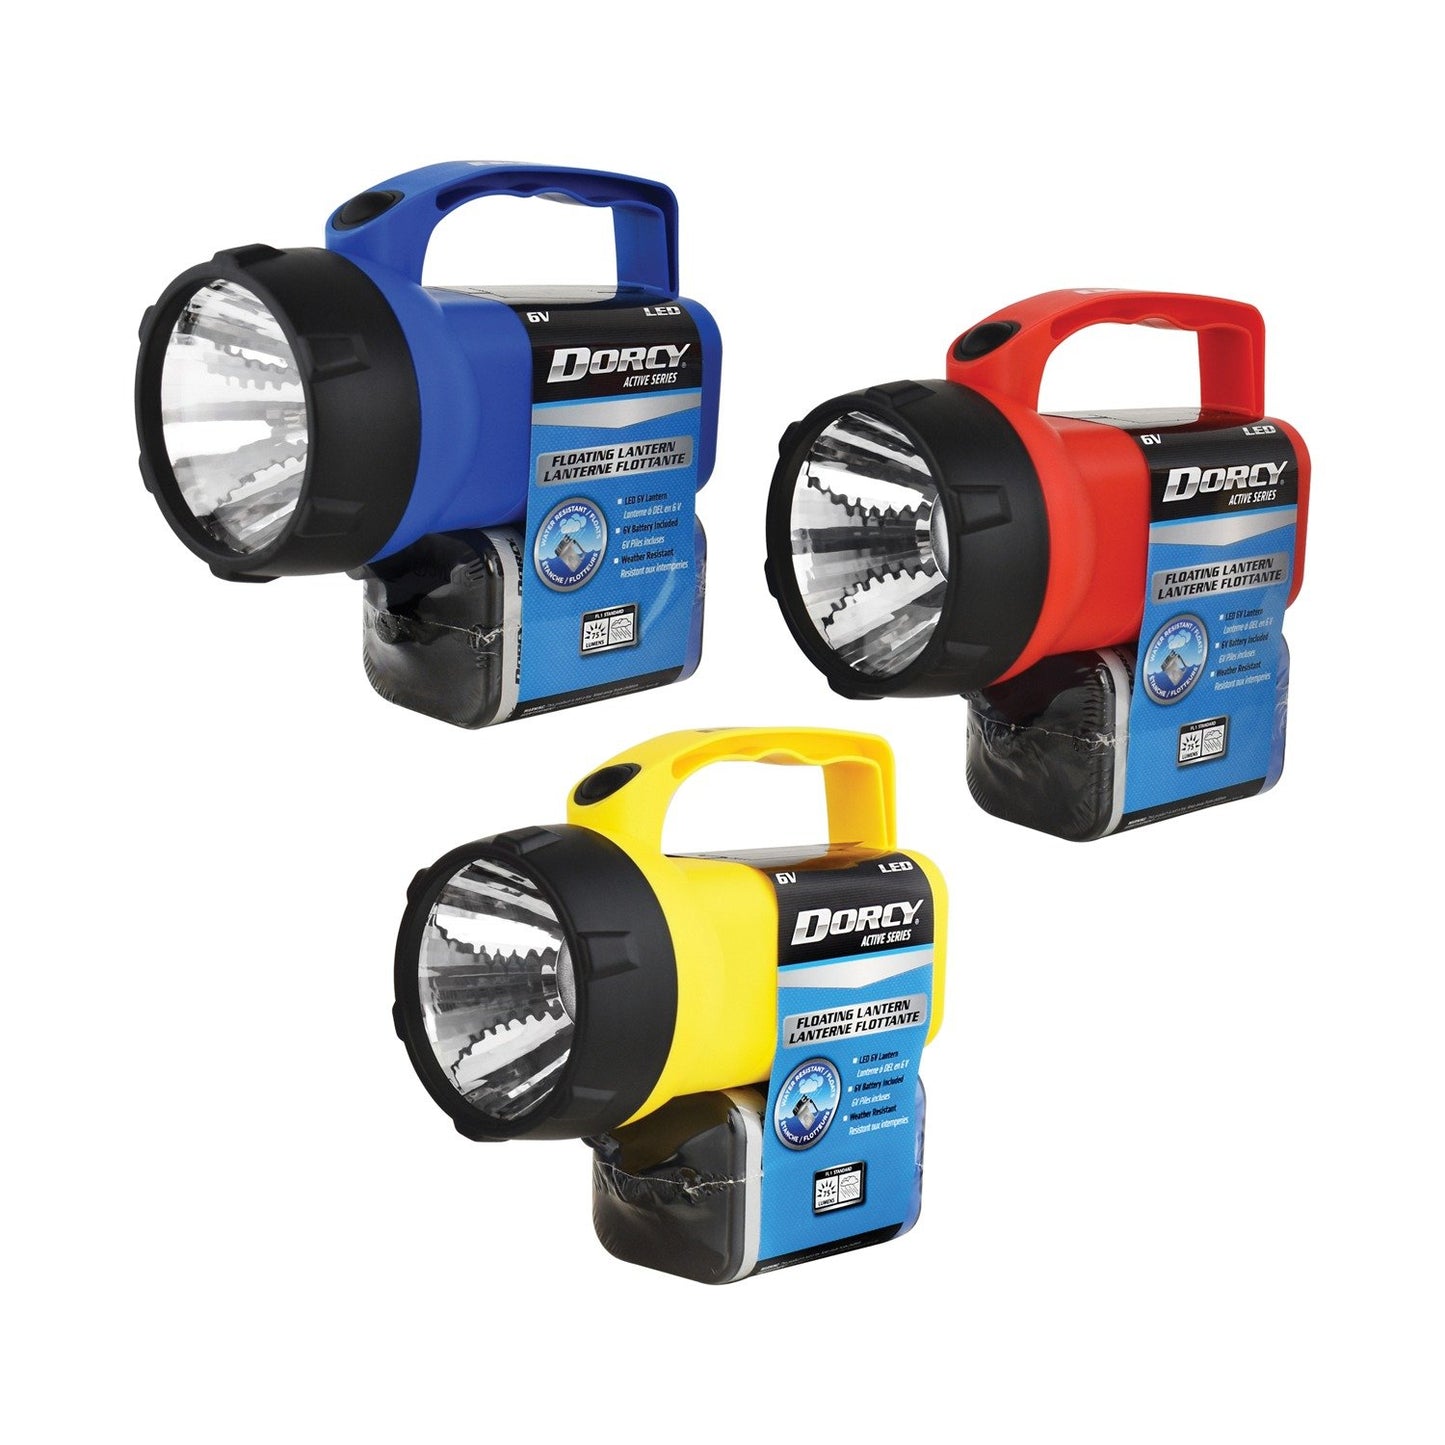 Dorcy 41-2081 70-Lumen 6-Volt Floating LED Lantern